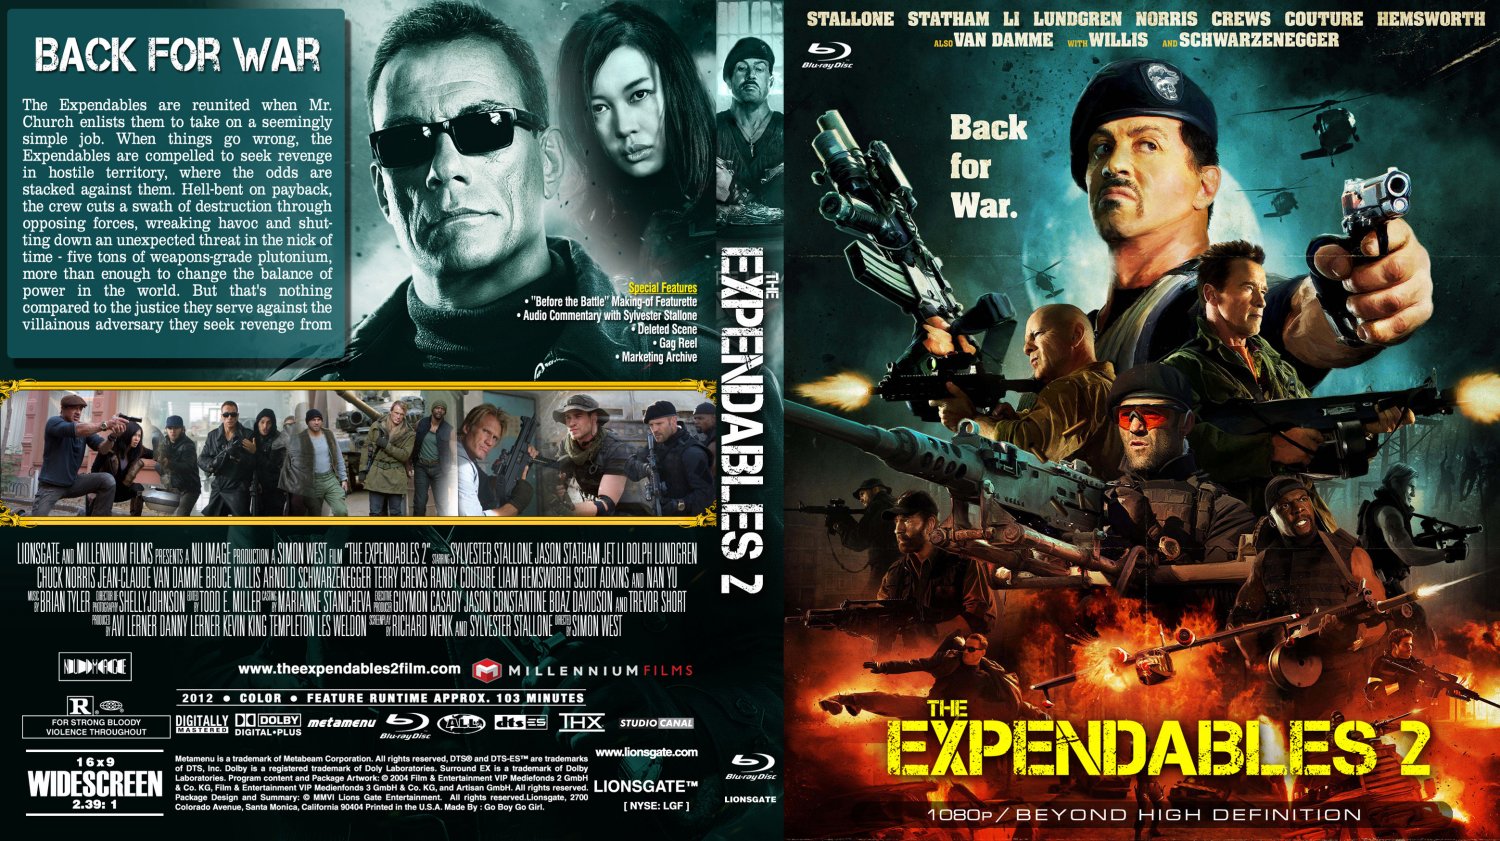 Неудержимый книга 12 глава 12. Expendables 4k Blu-ray Cover. Неудержимые (Blu-ray). The Expendables 2, 2012 DVD Cover. The Expendables 3 обложка DVD.